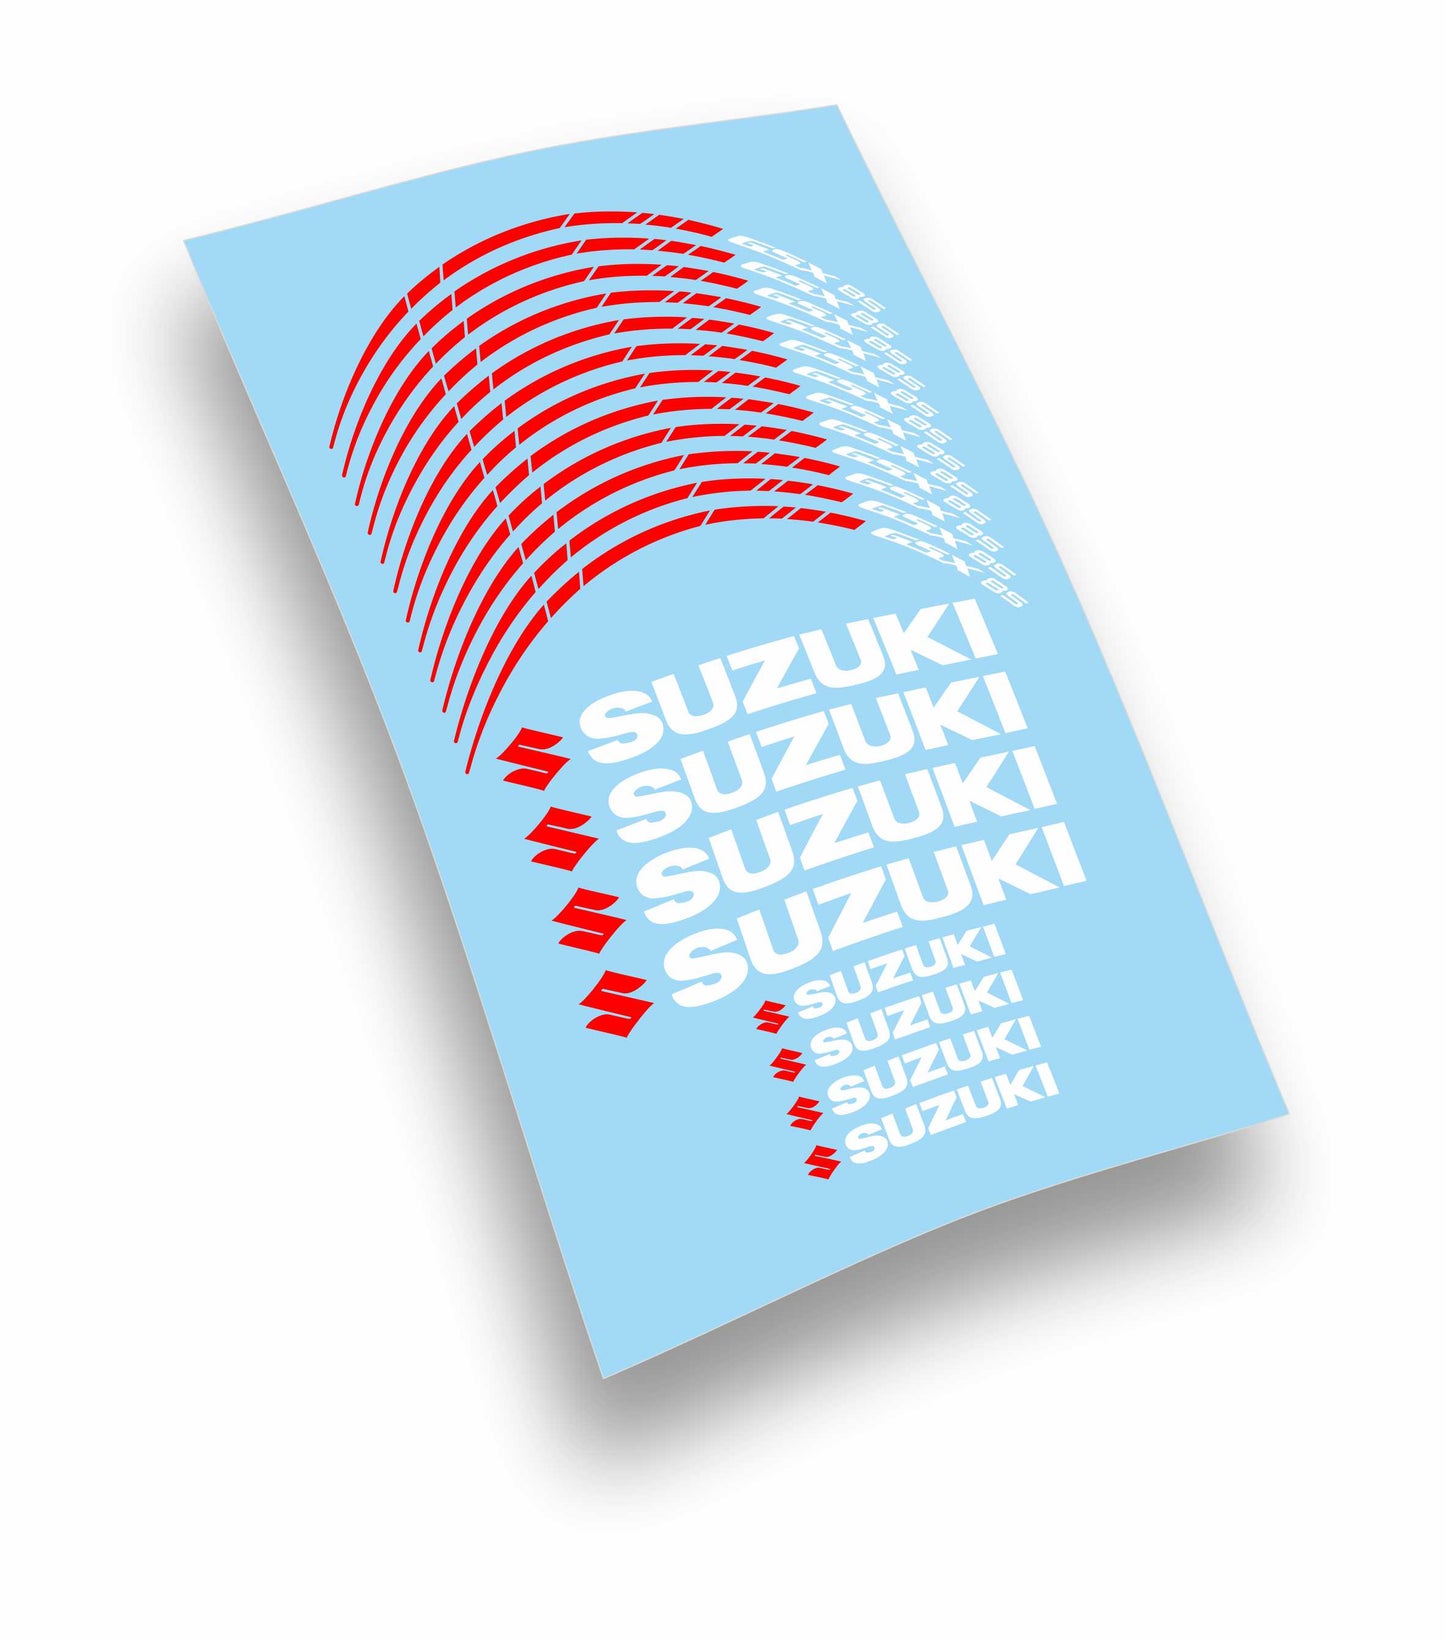 Suzuki Gsx 8S kit adesivi stickers cerchi moto personalizzati